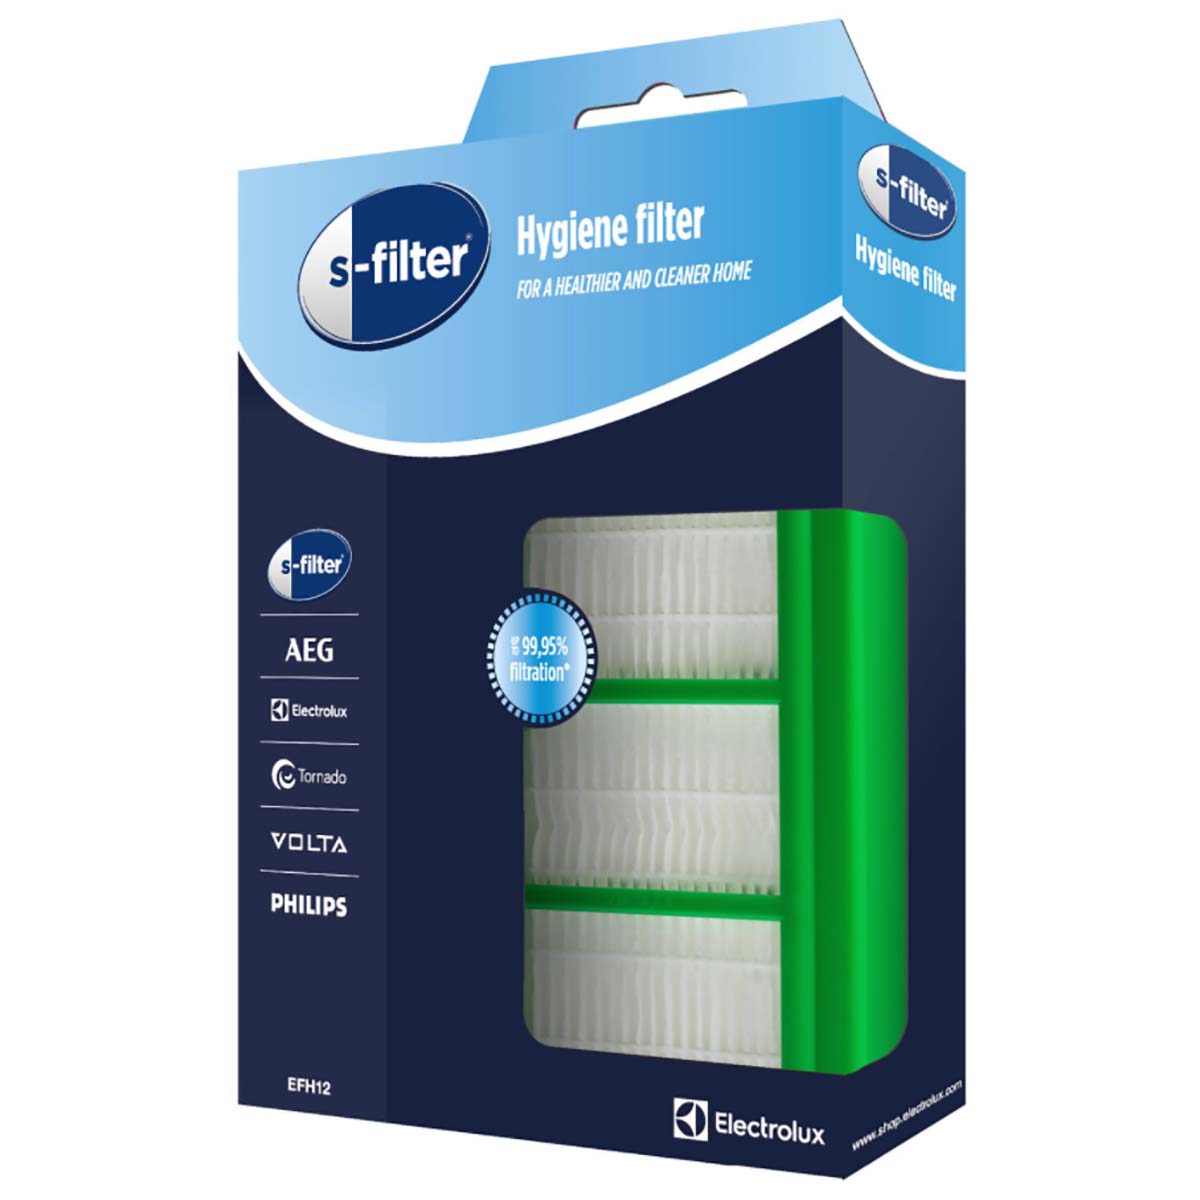 H filter. Фильтр HEPA h12. Фильтр super clean Air HEPA 12. Фильтр HEPA 12 (en 1822:1998). HEPA Filter h12 VH 91.